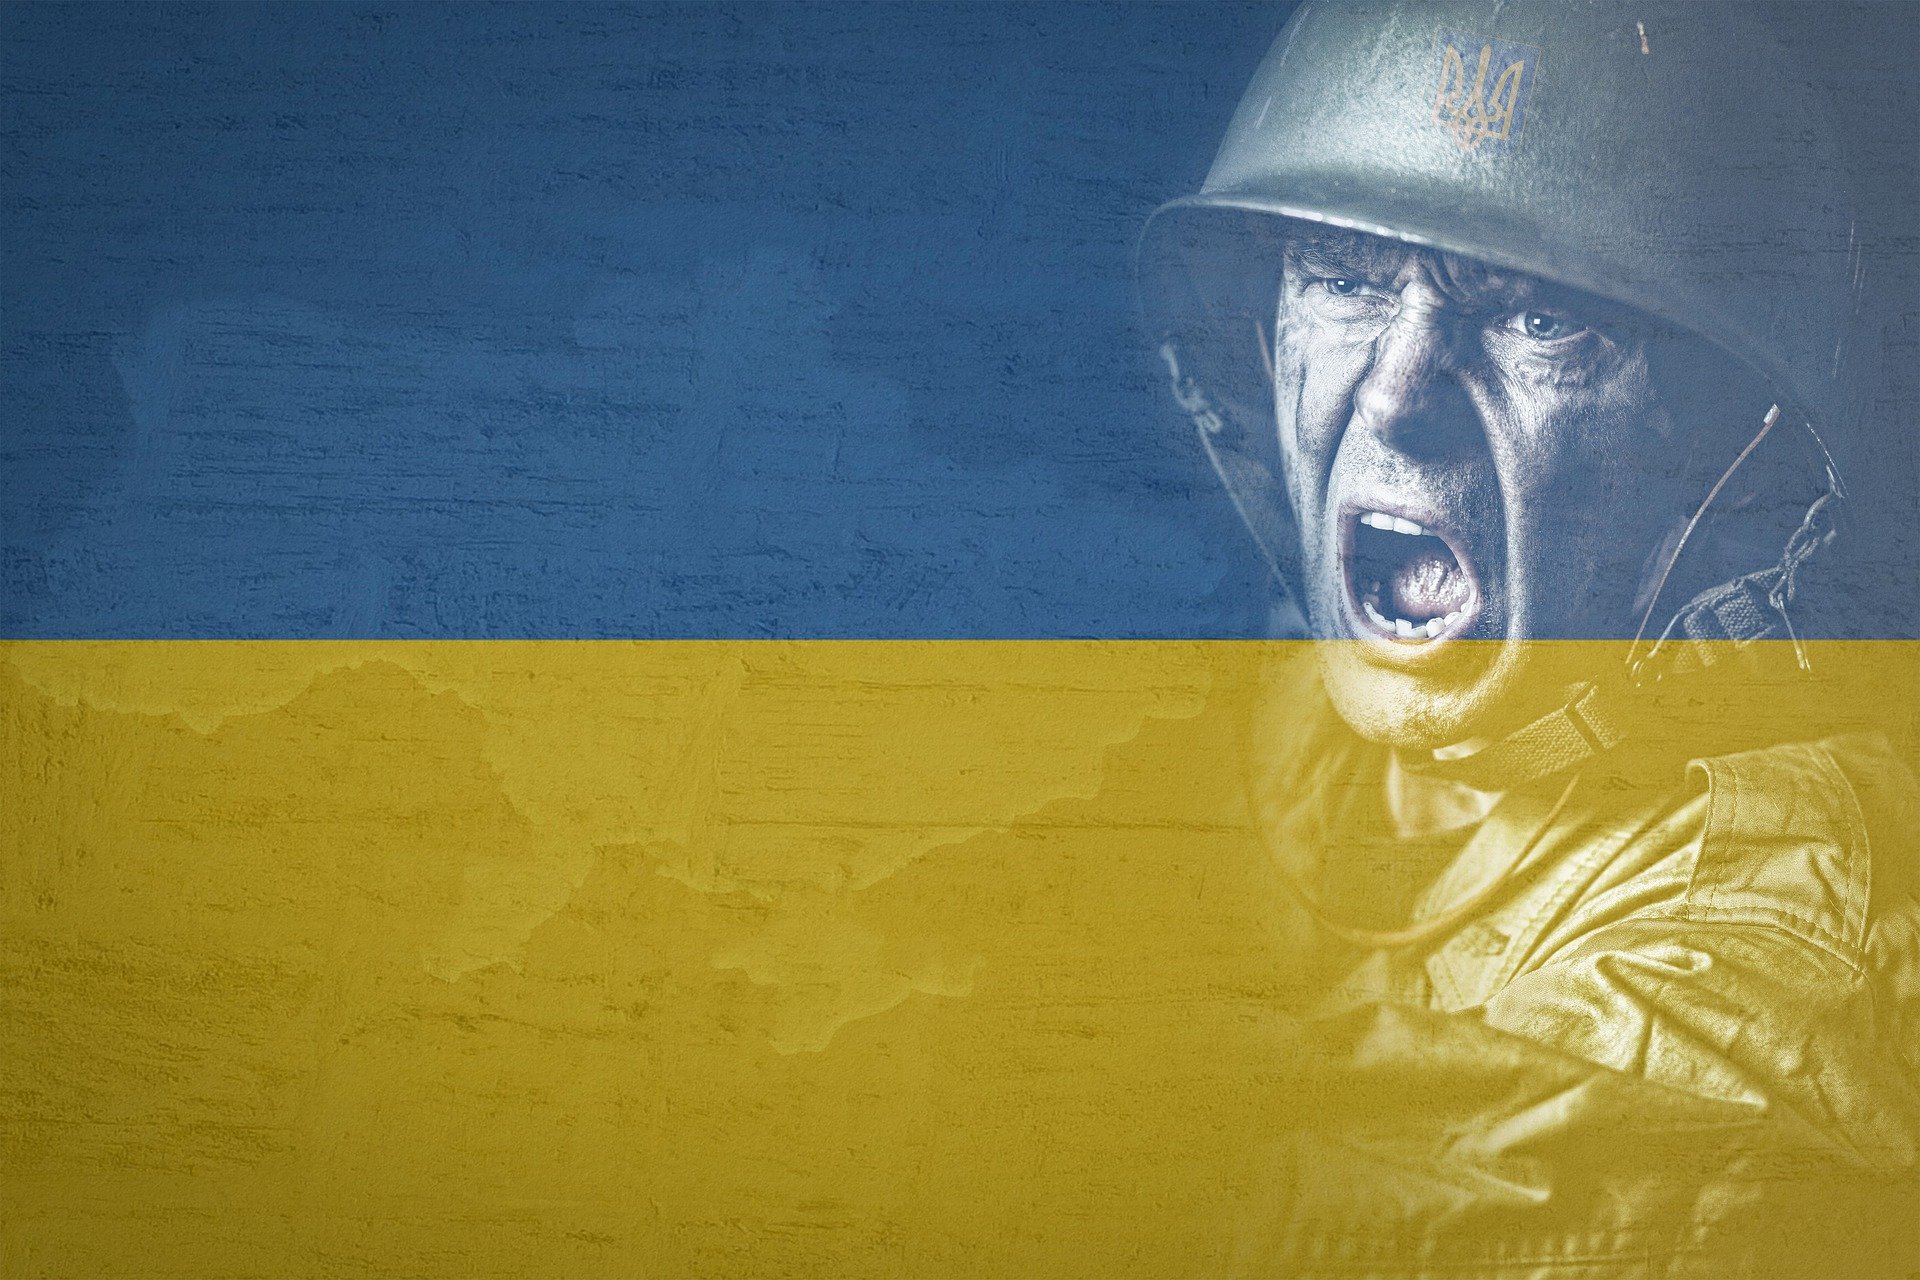 Les vidéos truquées font leur apparition dans le conflit entre la Russie et l'Ukraine. © Enrique